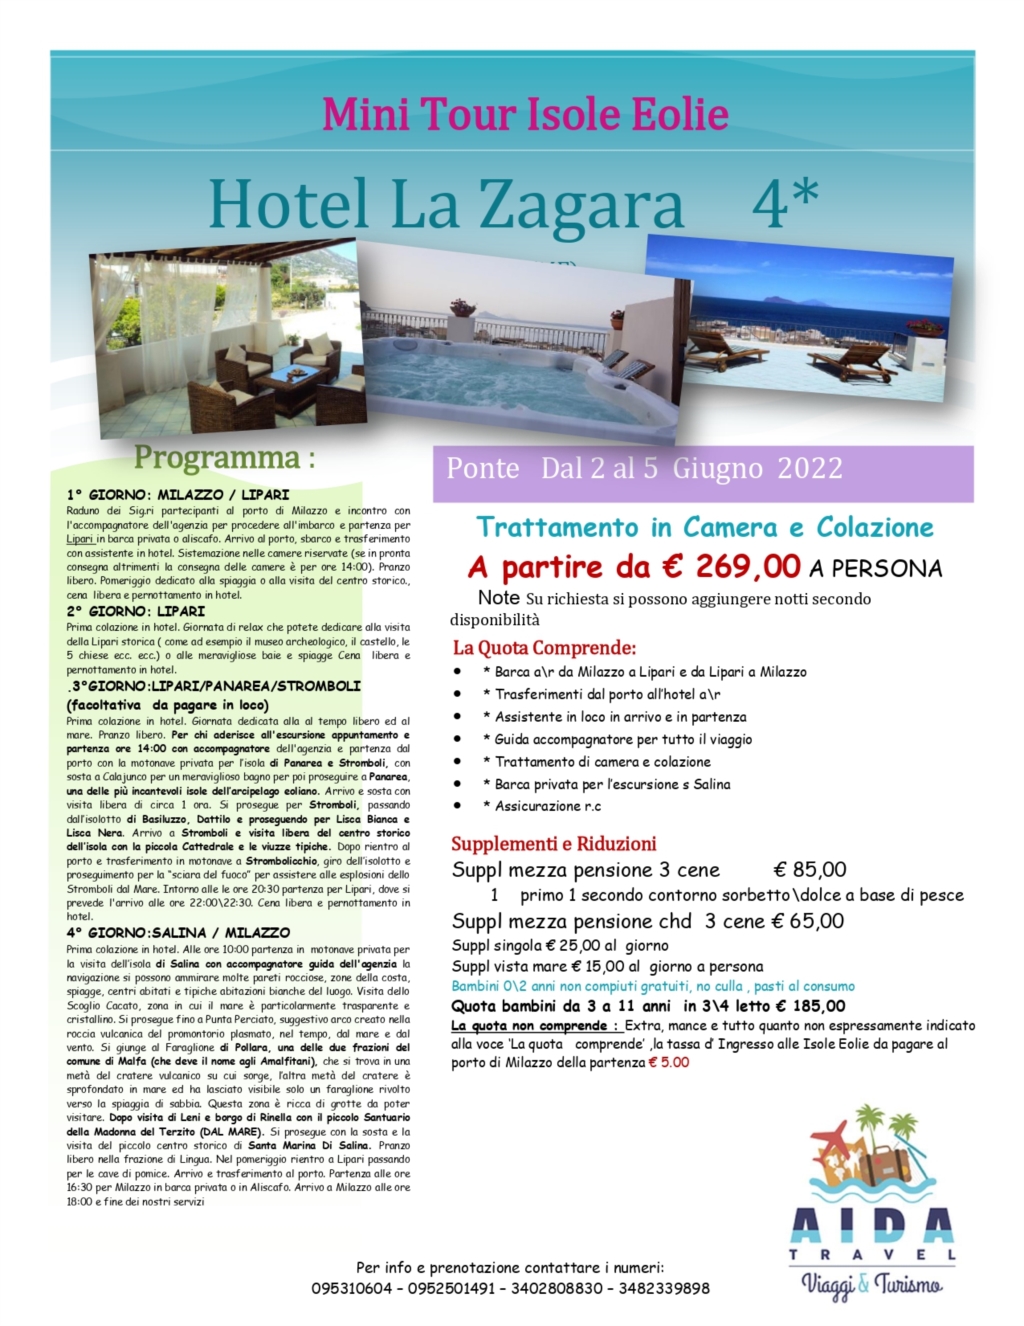 Hotel La Zagara